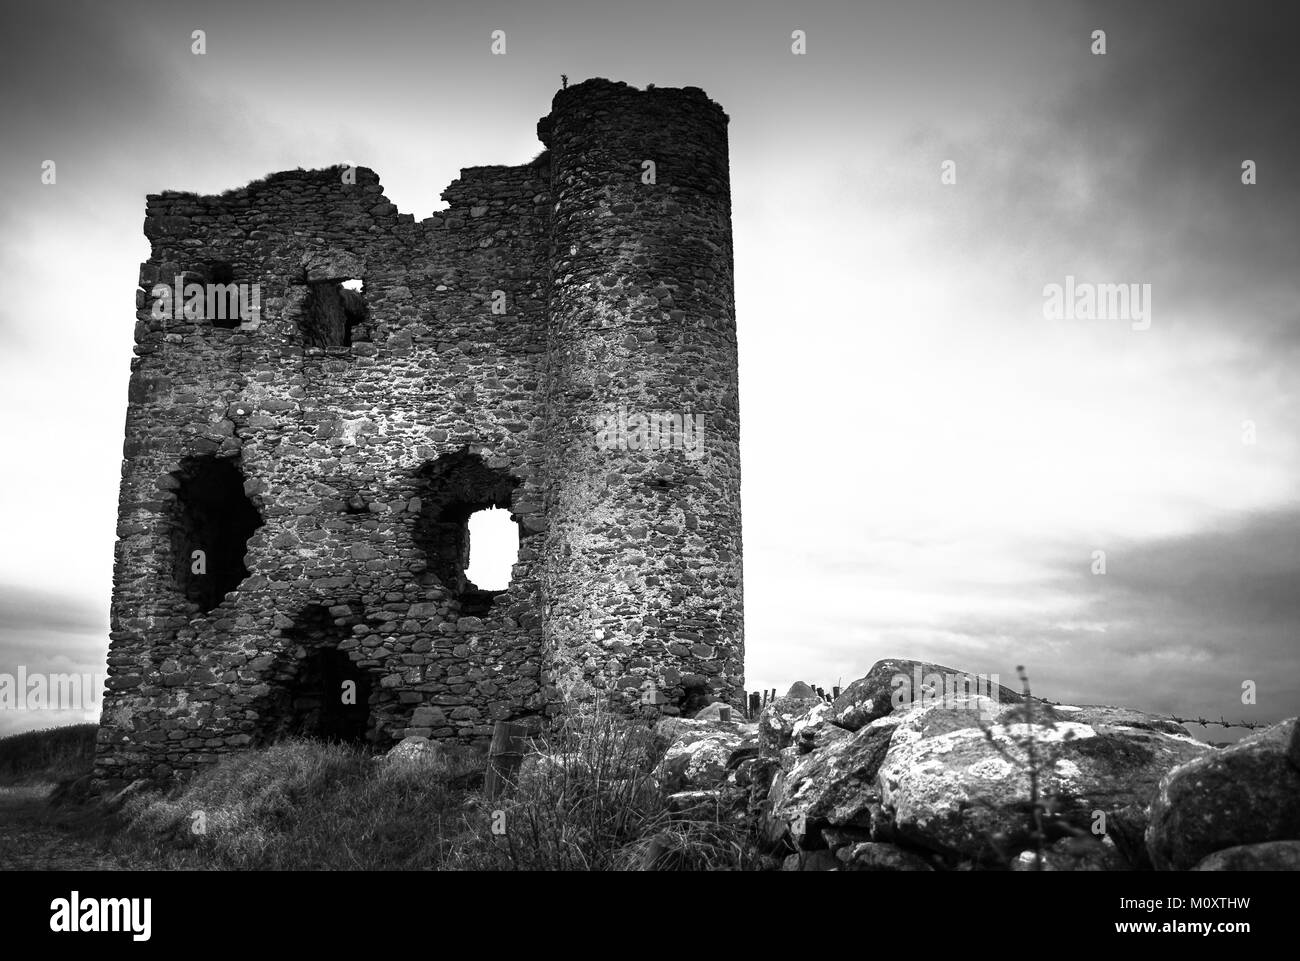 Esta es una imagen en blanco y negro de las ruinas de un castillo sobre una colina en Irlanda Foto de stock